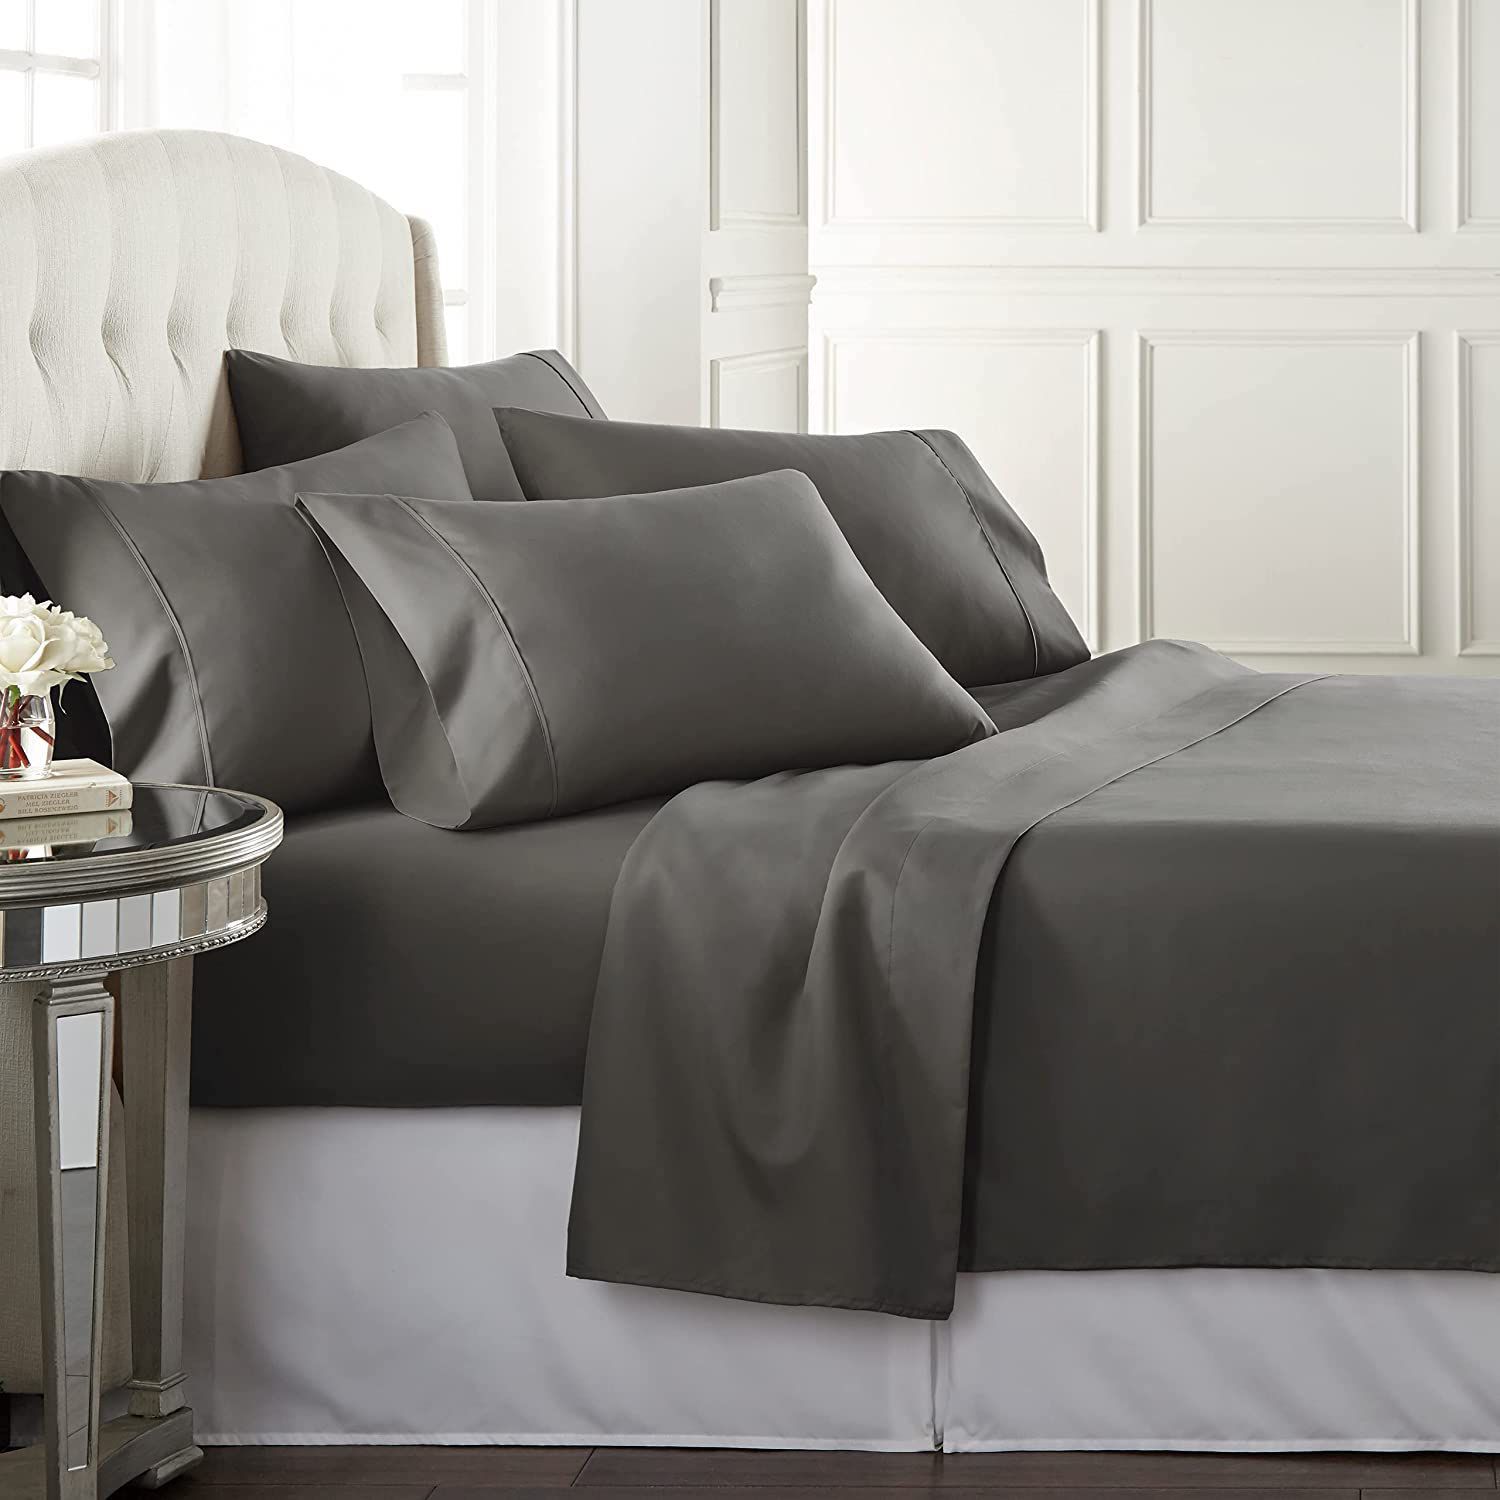 Danjor Linens Full Size Bed Sheets Set